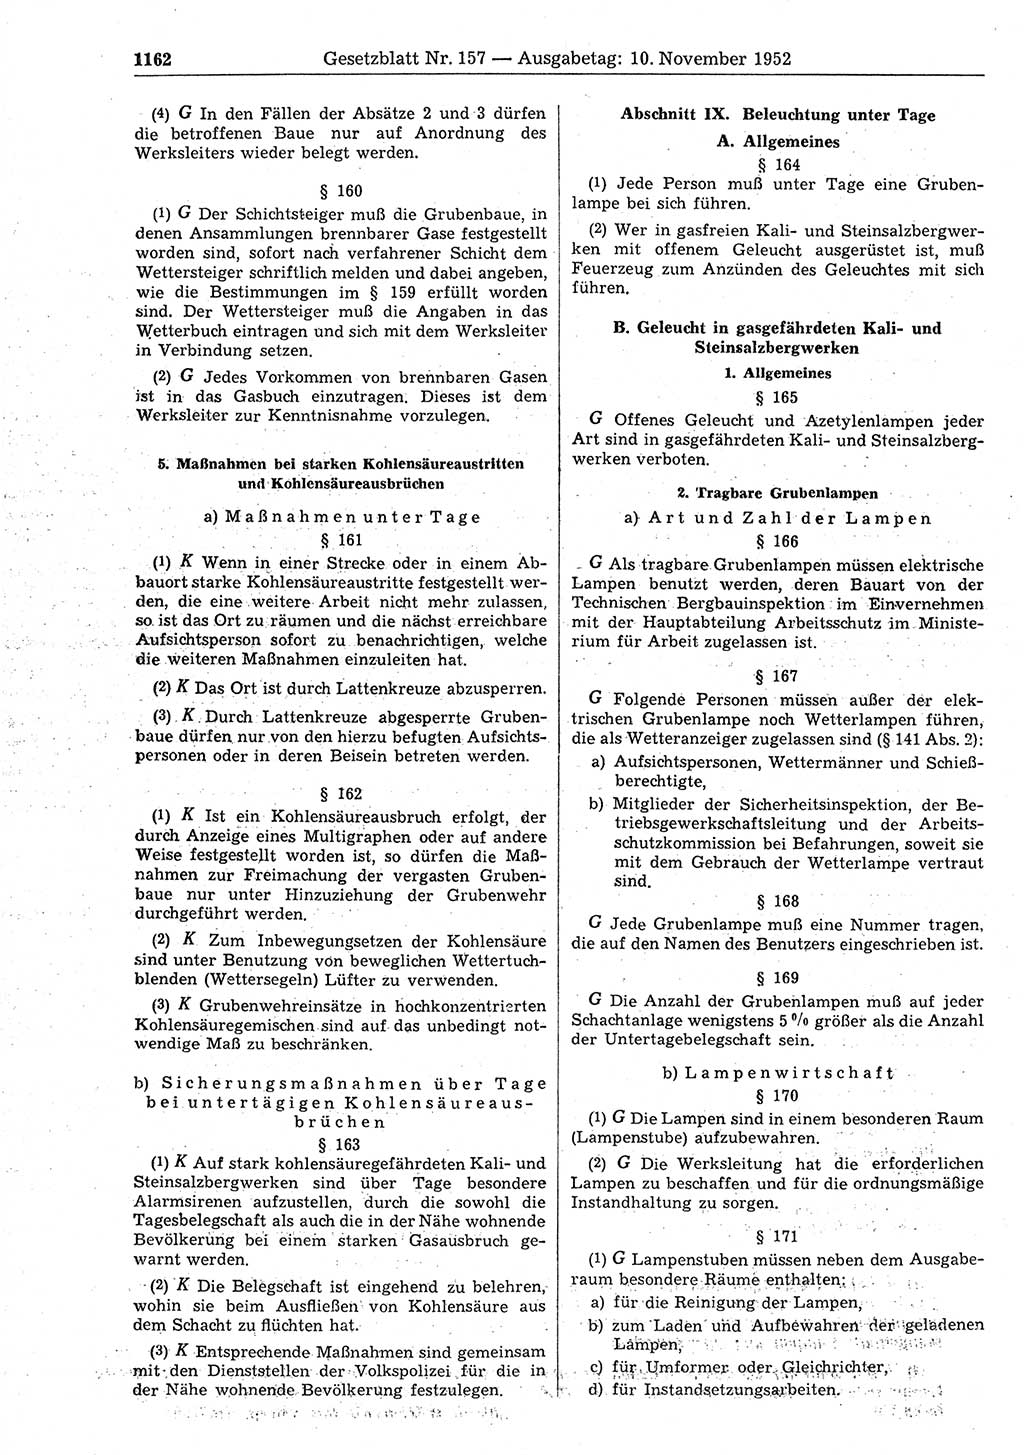 Gesetzblatt (GBl.) der Deutschen Demokratischen Republik (DDR) 1952, Seite 1162 (GBl. DDR 1952, S. 1162)